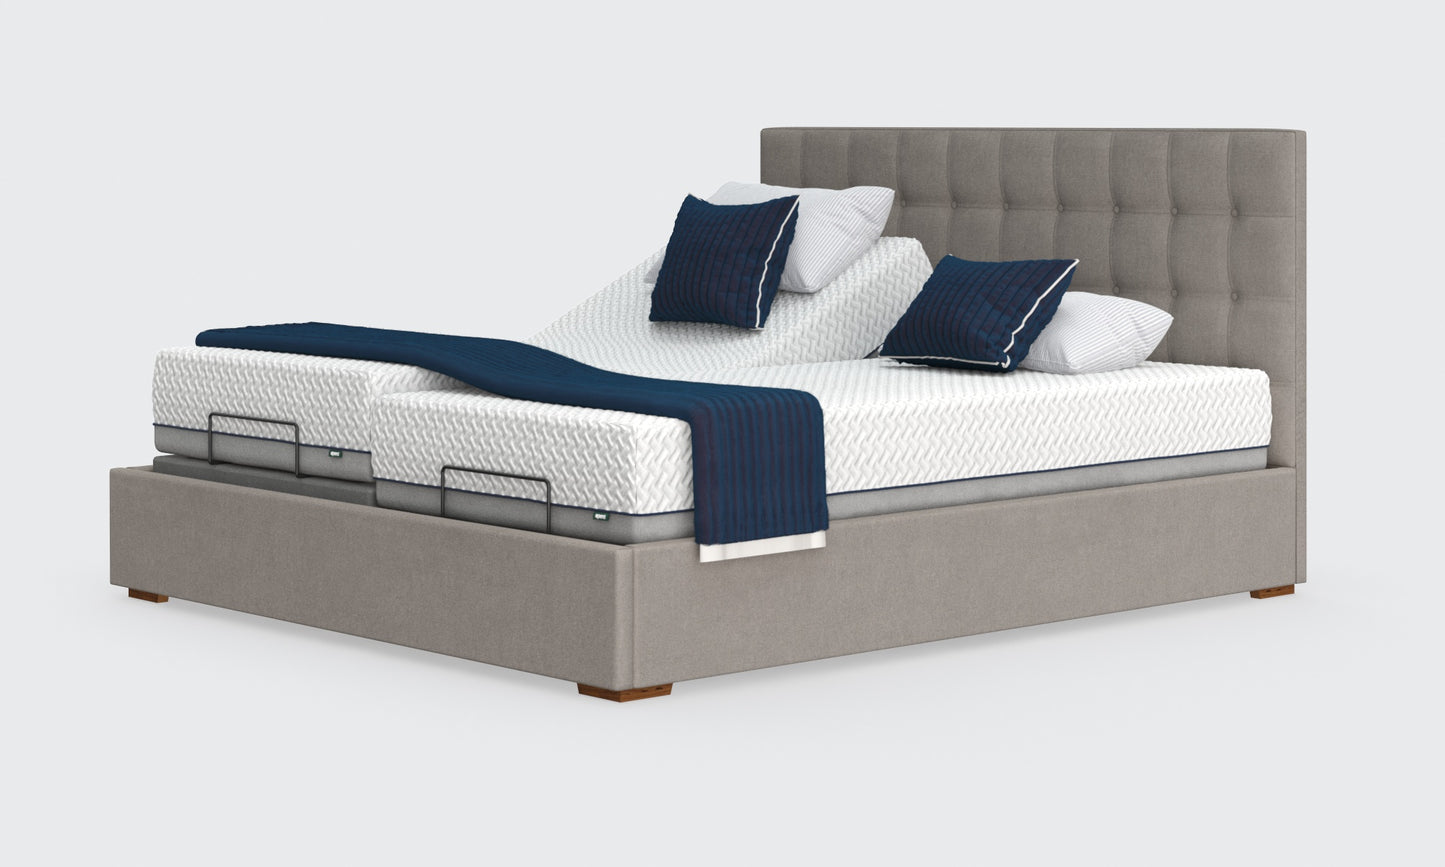 Hagen Dual Adjustable Bed